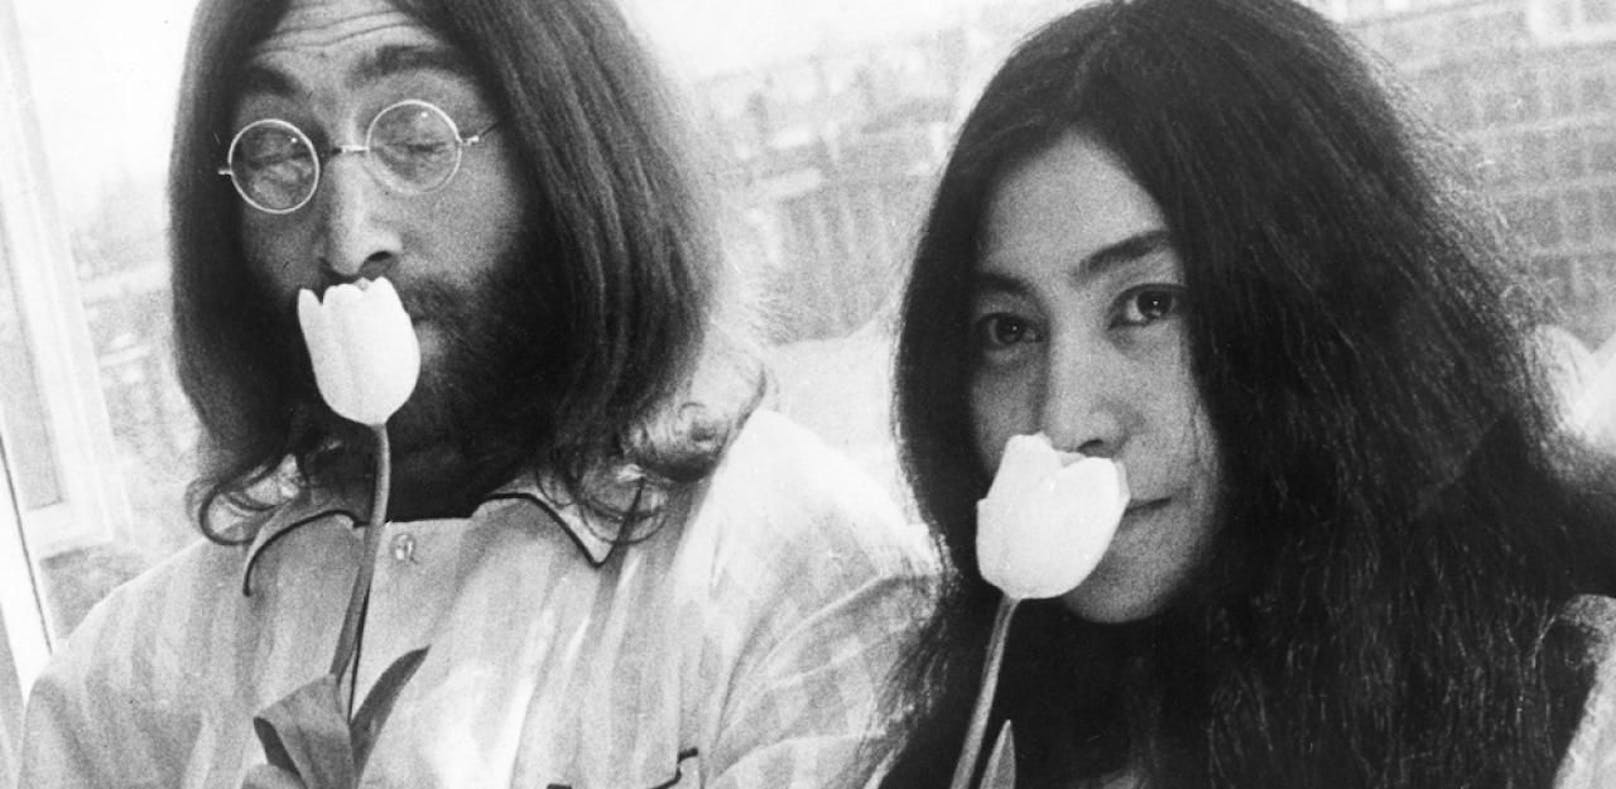 Yoko Ono für Inspiration von "Imagine" geehrt